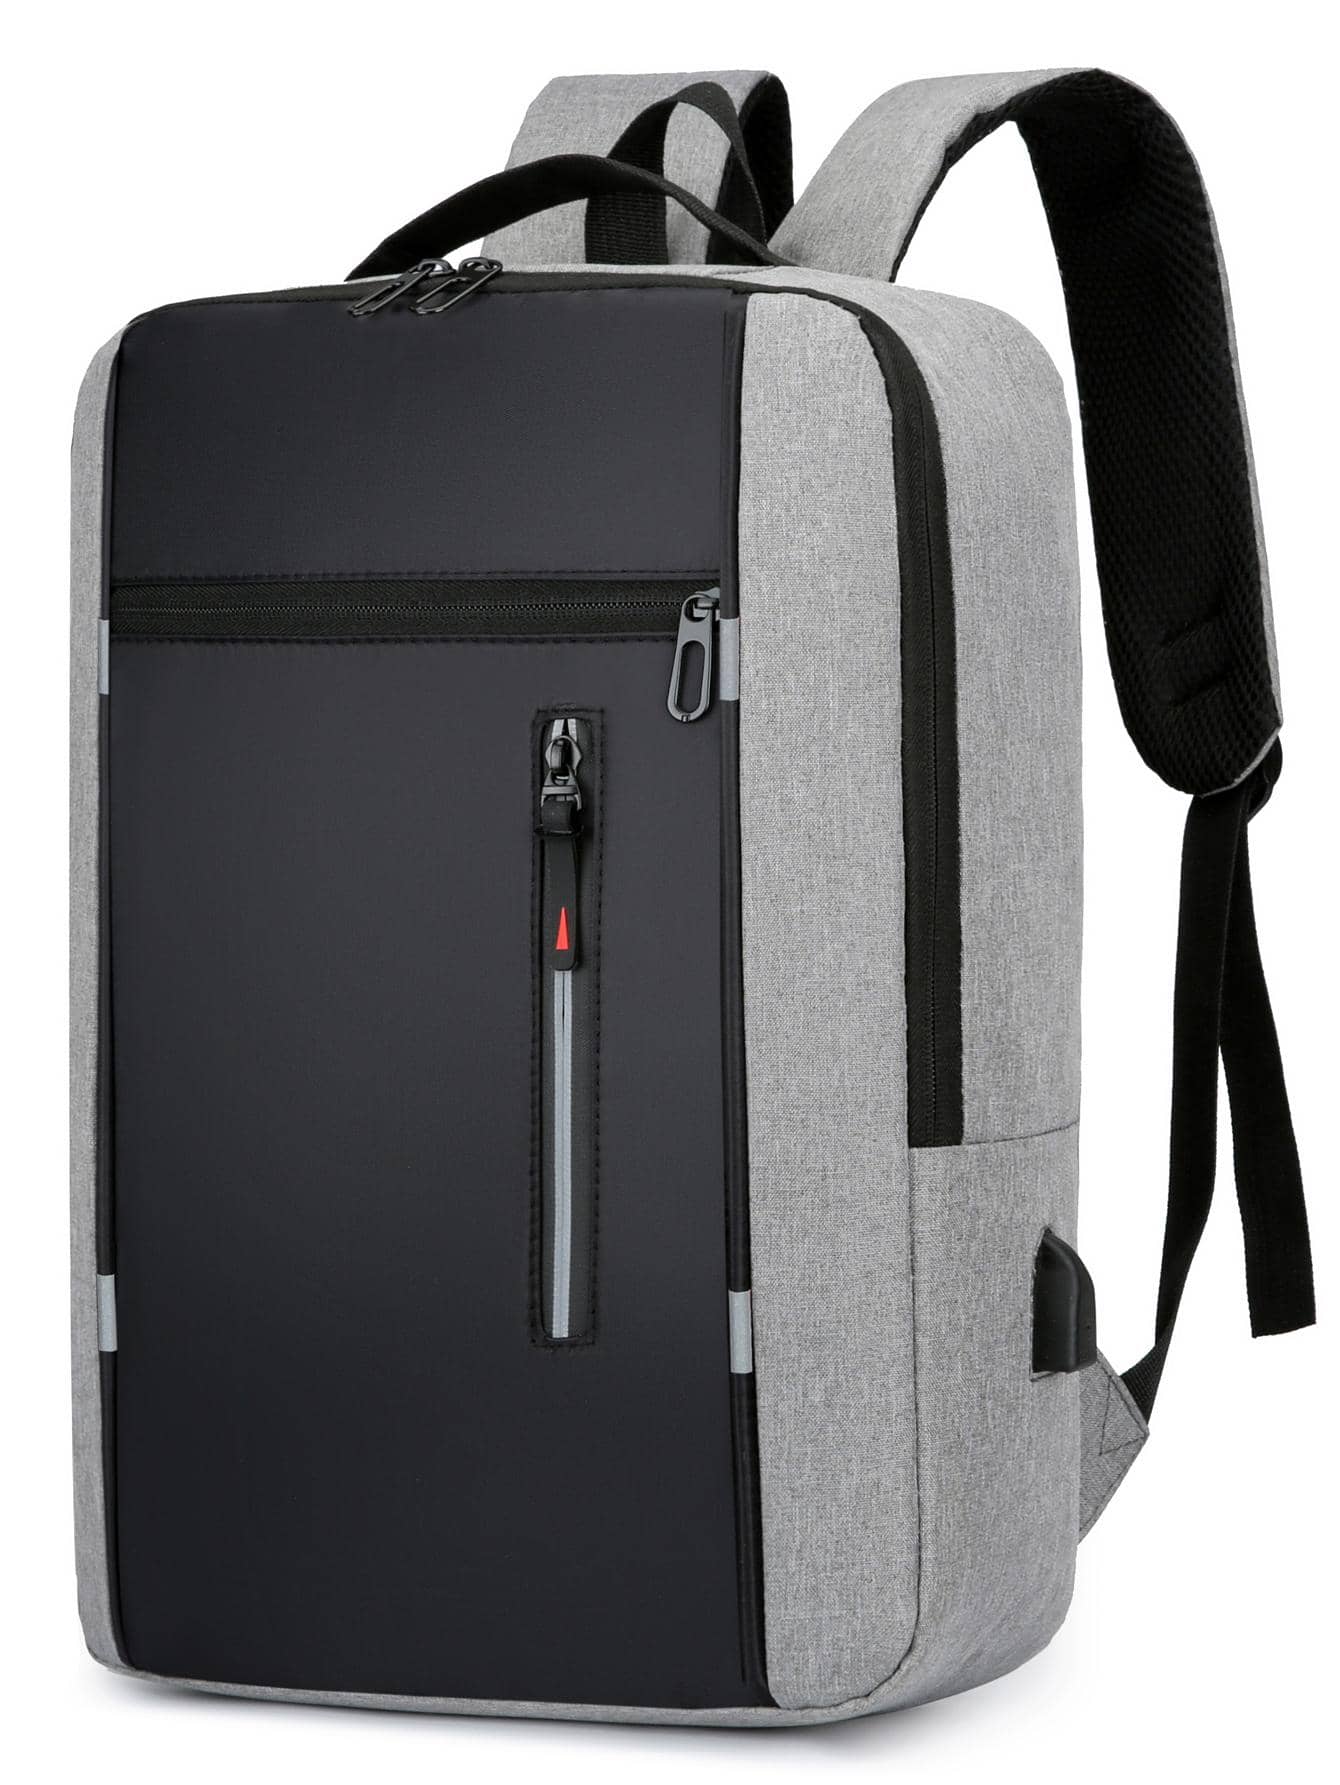 Рюкзак ноутбука Колорблок 15, серый сумка на плечо для женщин водонепроницаемый рюкзак для ноутбука с usb портом для зарядки с карманом для обуви вместительный ранец